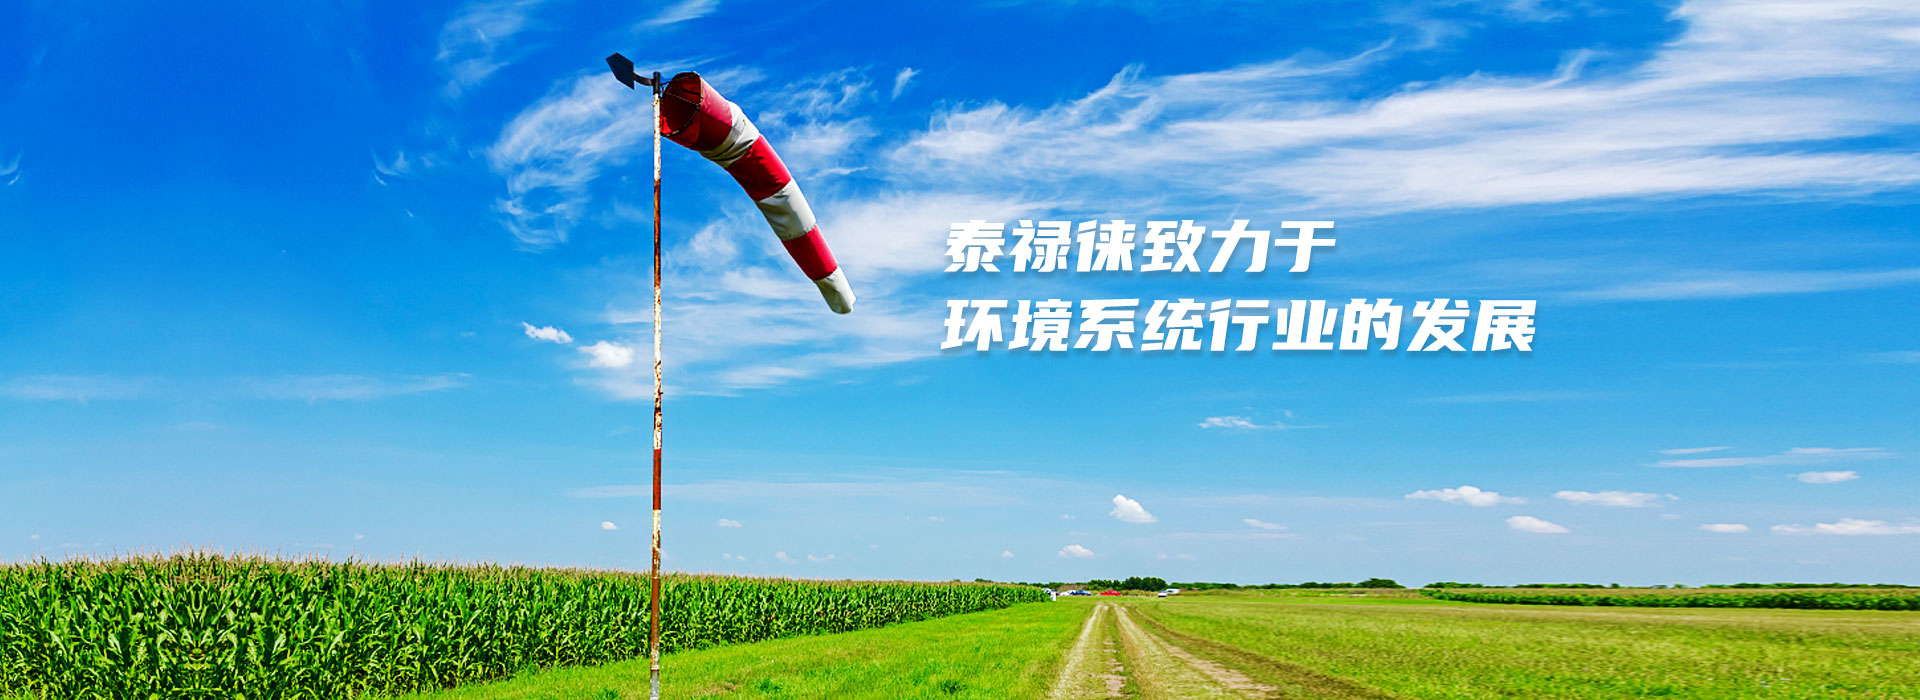  武汉泰禄徕环境系统有限公司